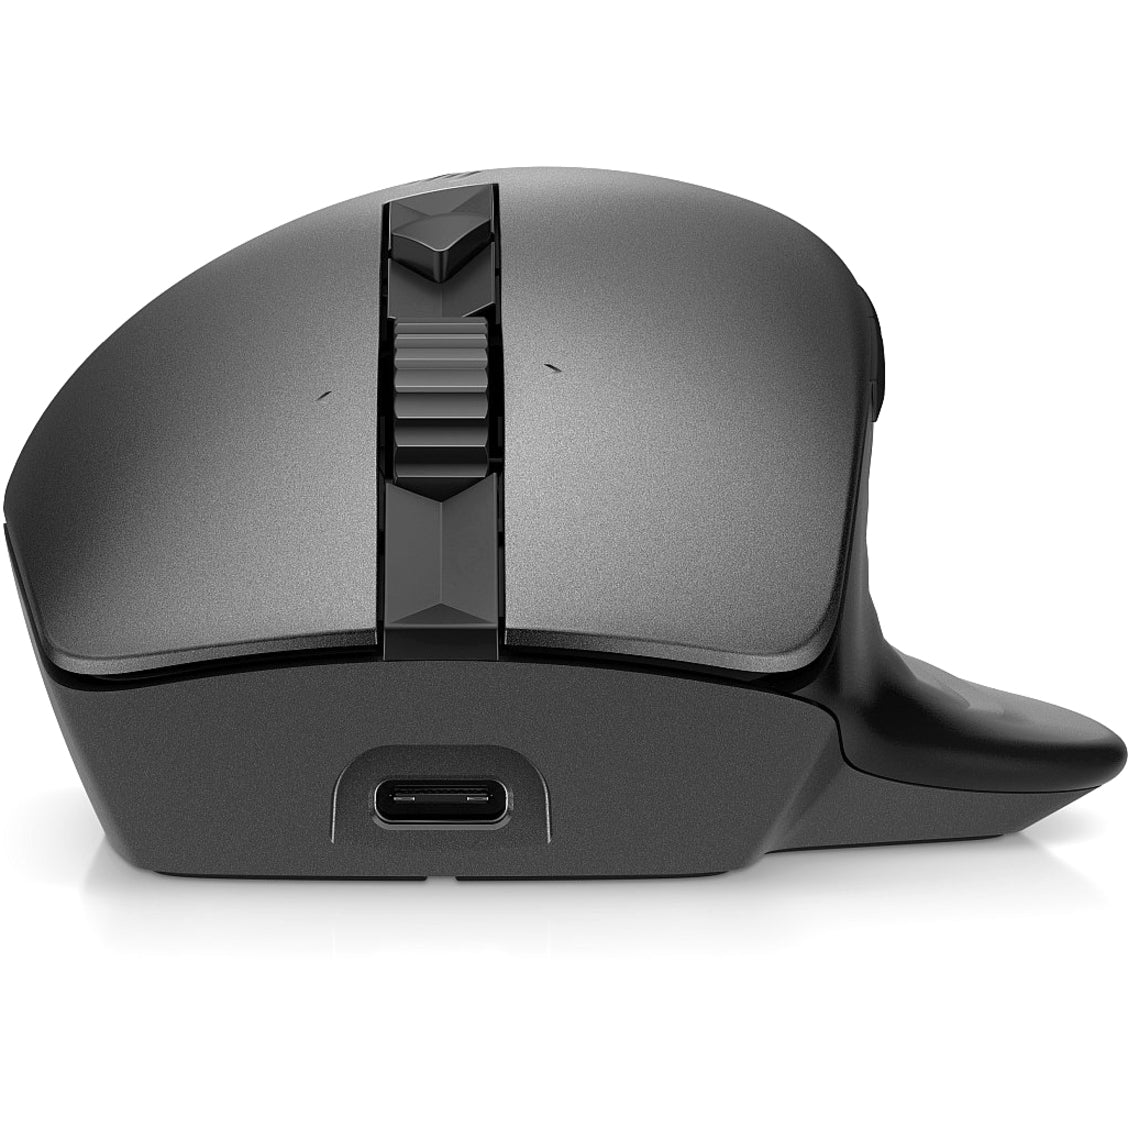 HP 935 Mouse, Wireless, Black - 1 Year Warranty